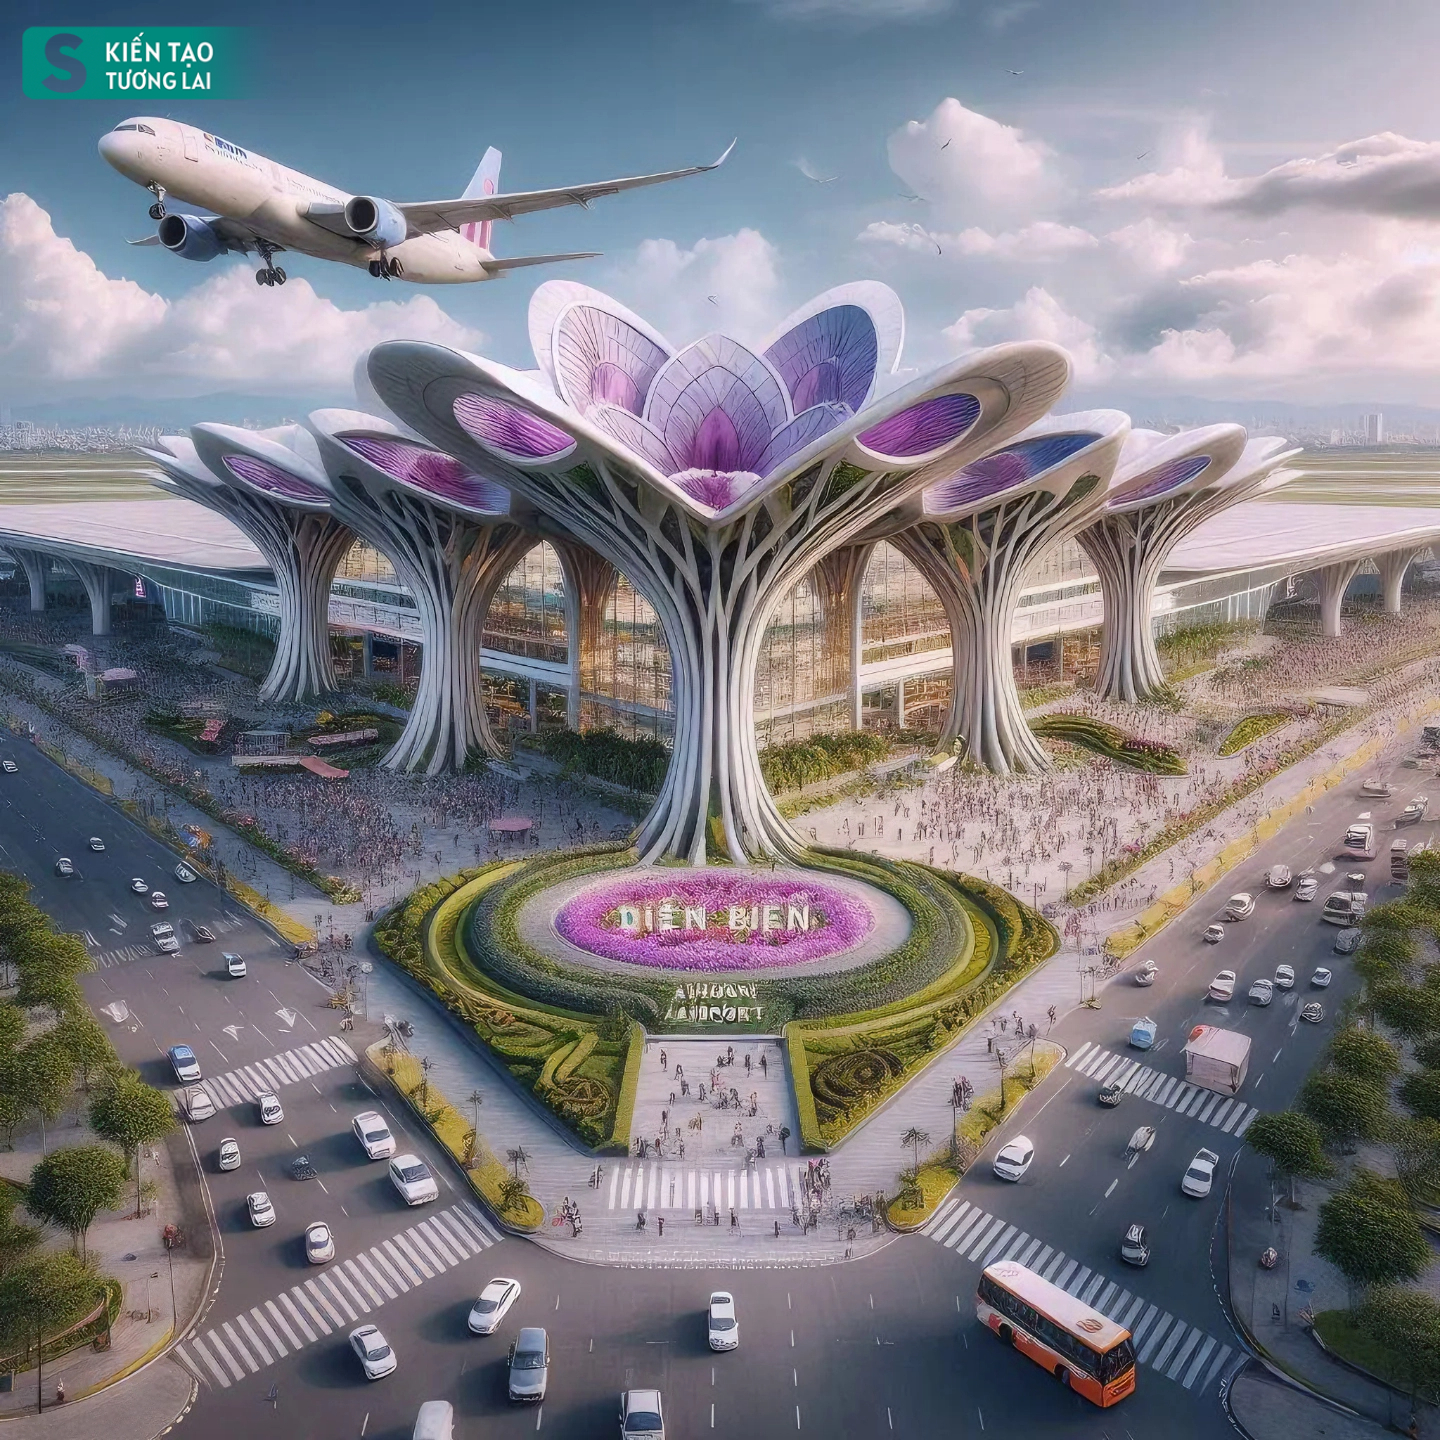 Ngắm tỉnh duy nhất ở Việt Nam giáp Trung Quốc - Lào, có sân bay, tương lai phát triển 'đẳng cấp quốc tế'- Ảnh 9.